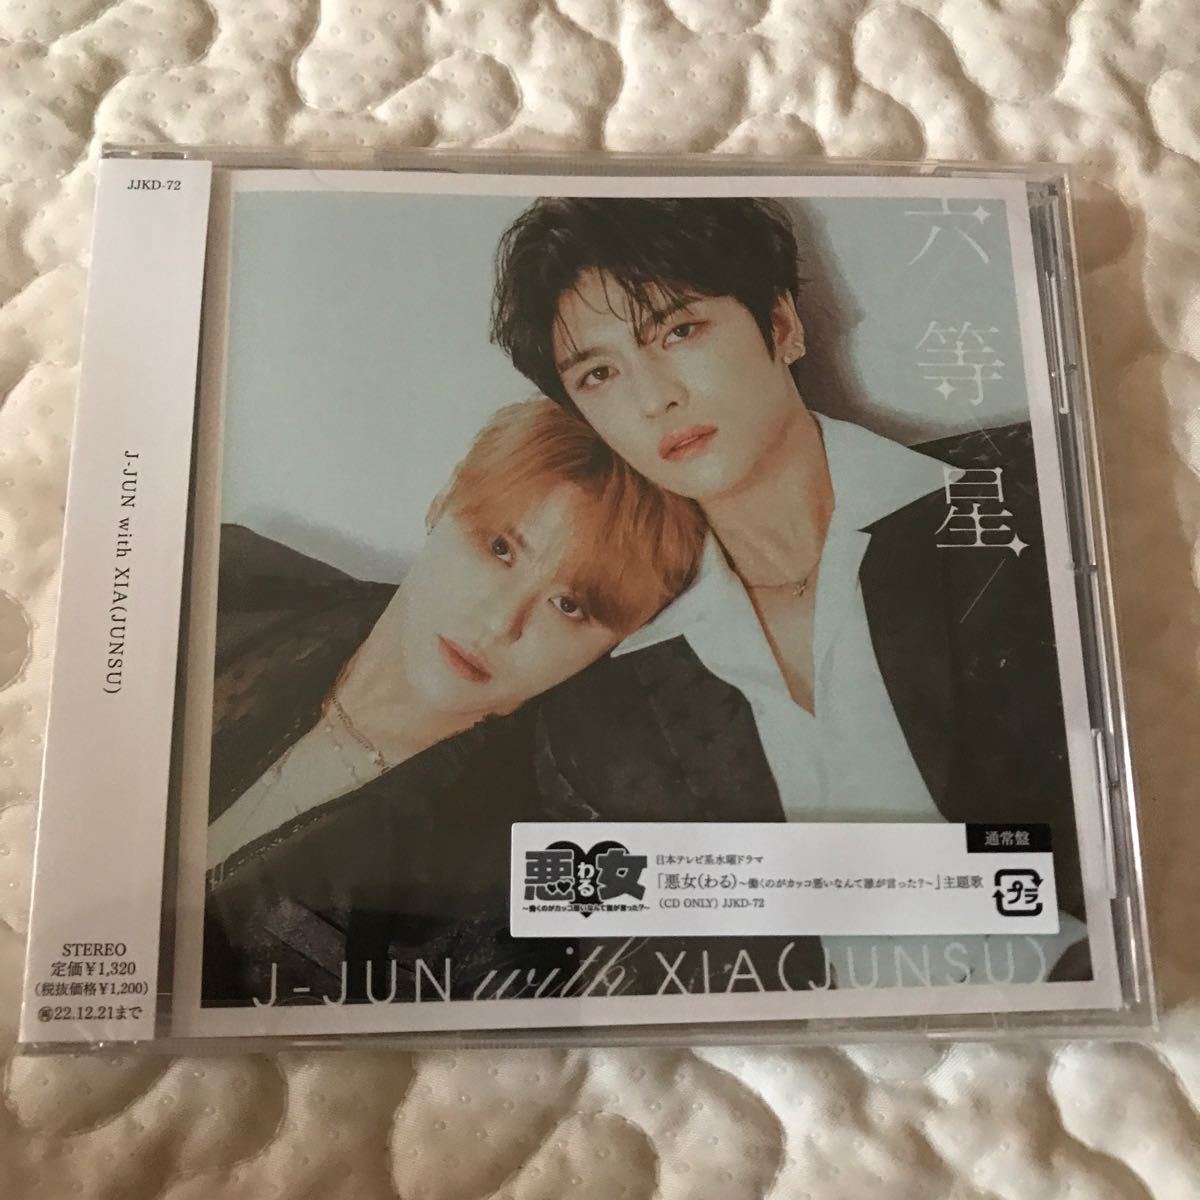 通常盤 J-JUN with XIA (JUNSU) CD/六等星 ジェジュン 未開封新品